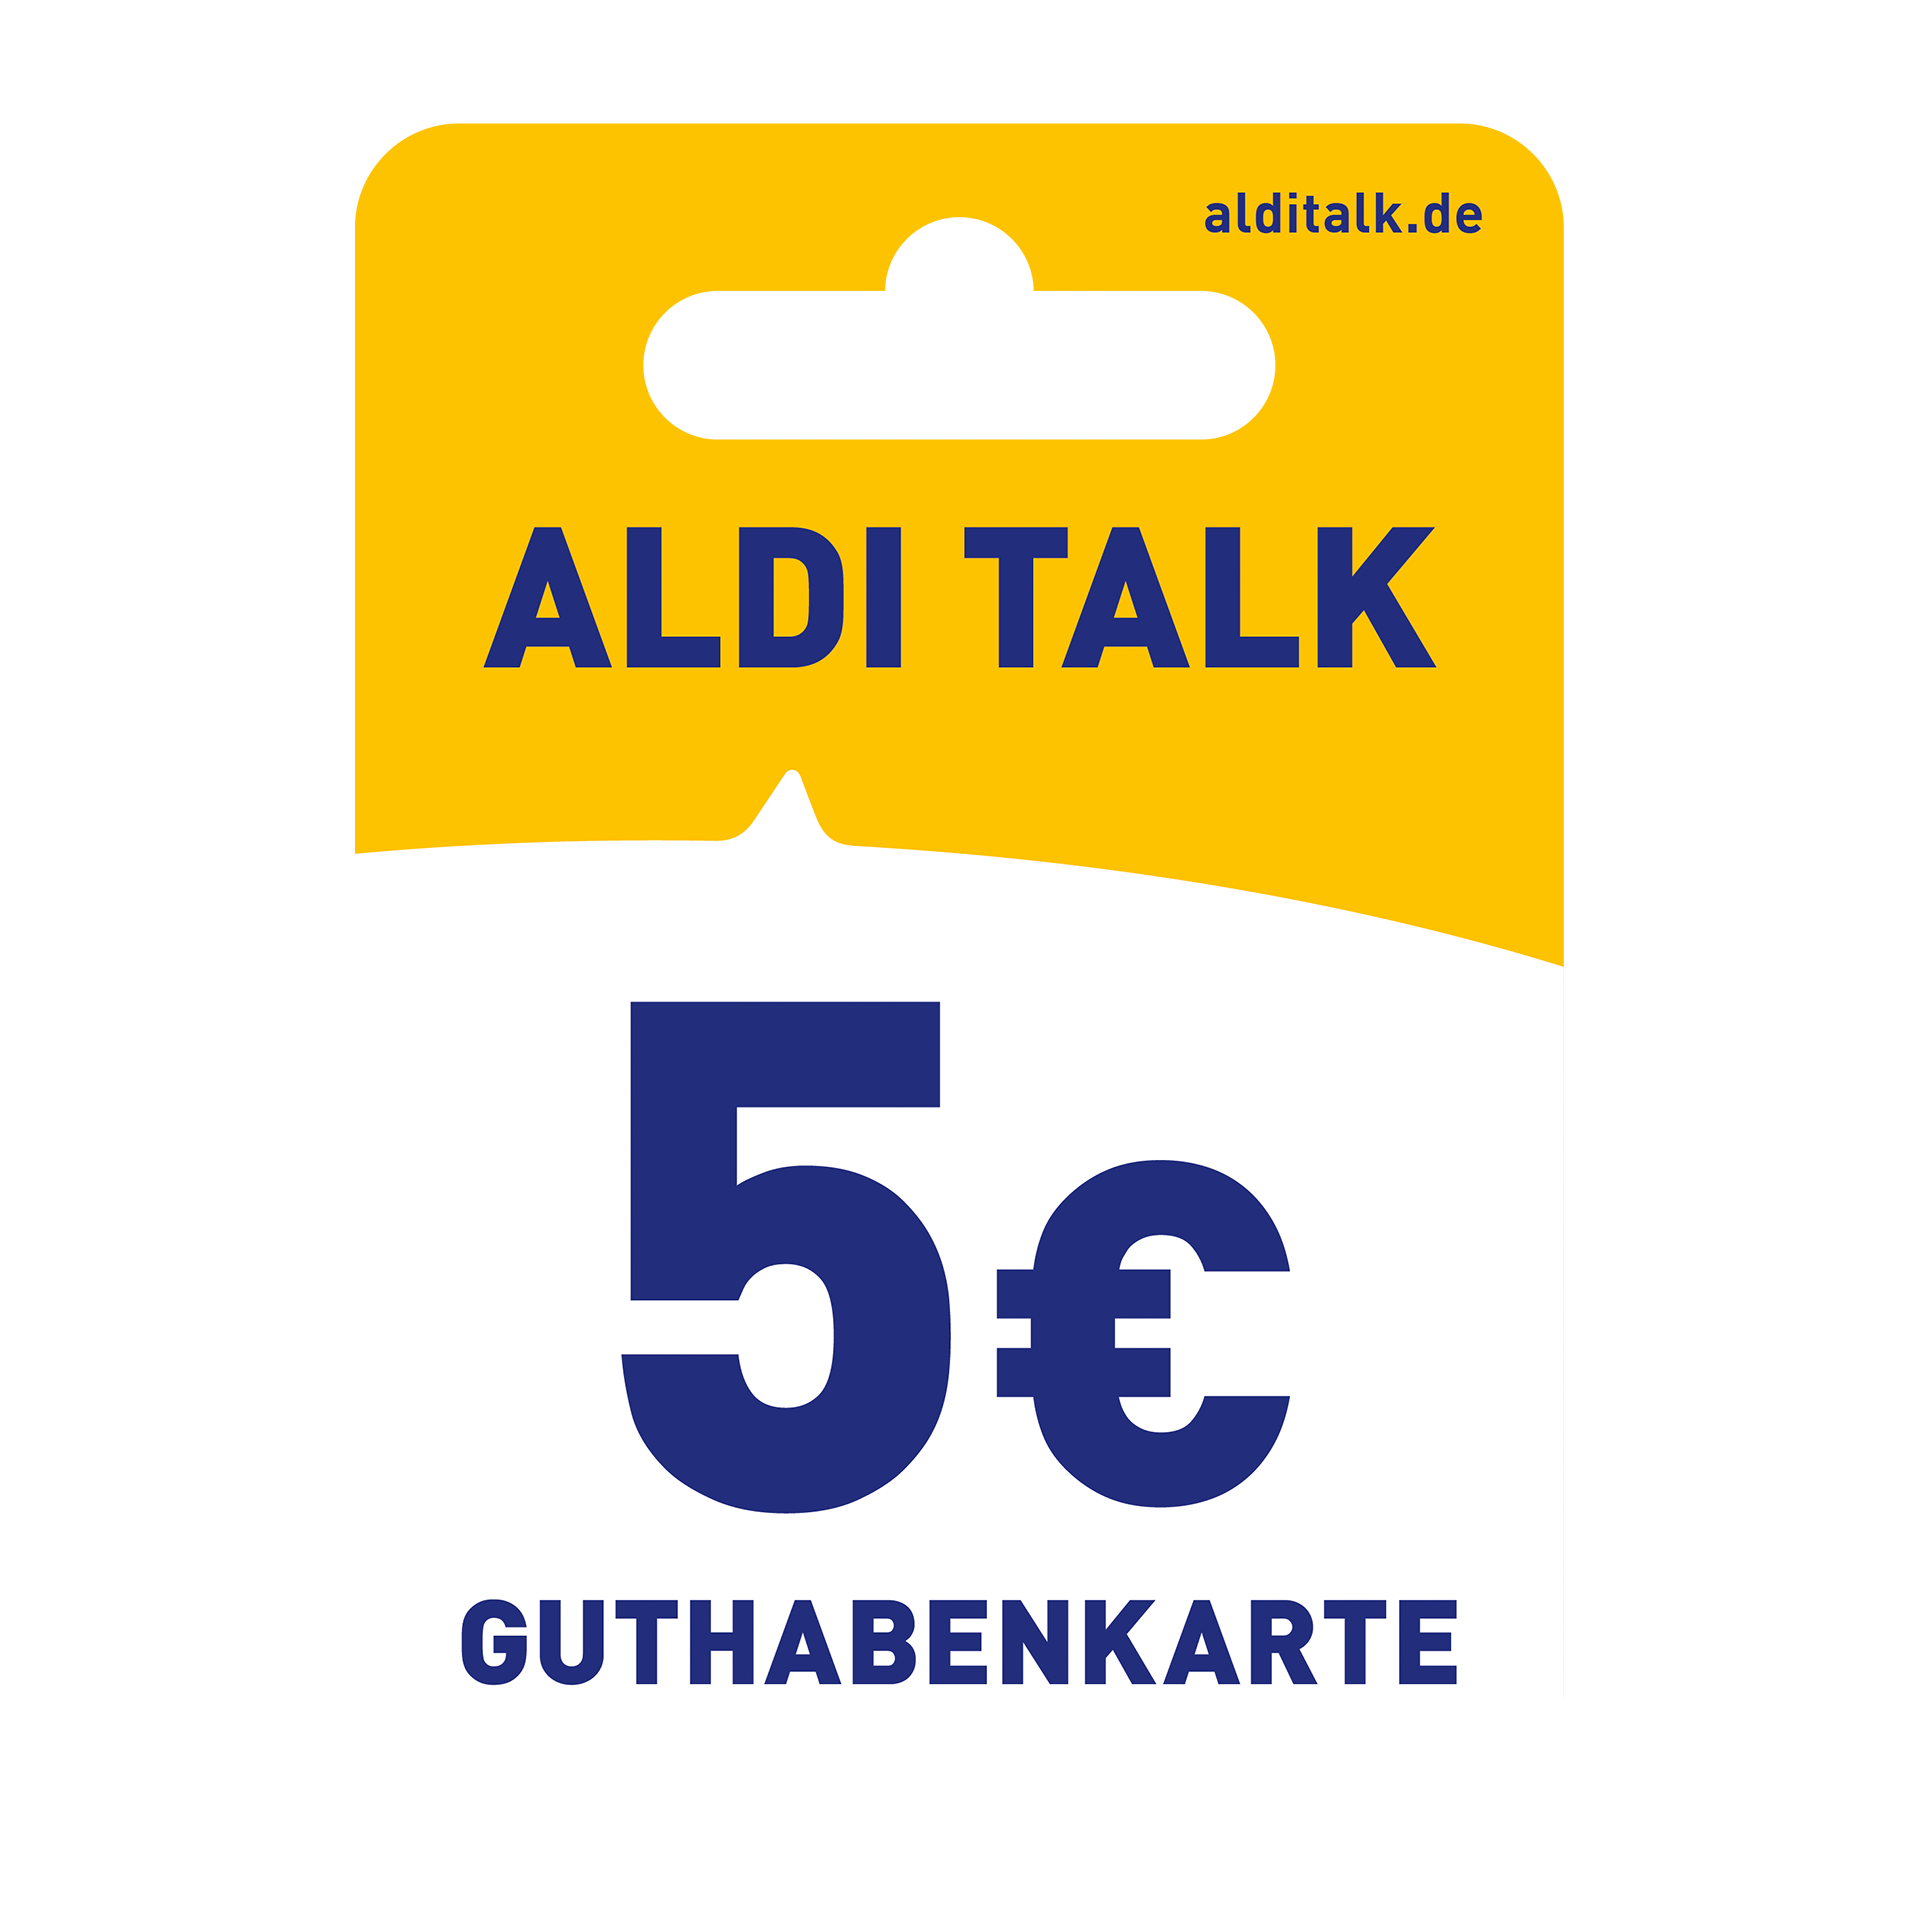 E-Plus 20 € Guthabenkarte günstig bei ALDI Nord